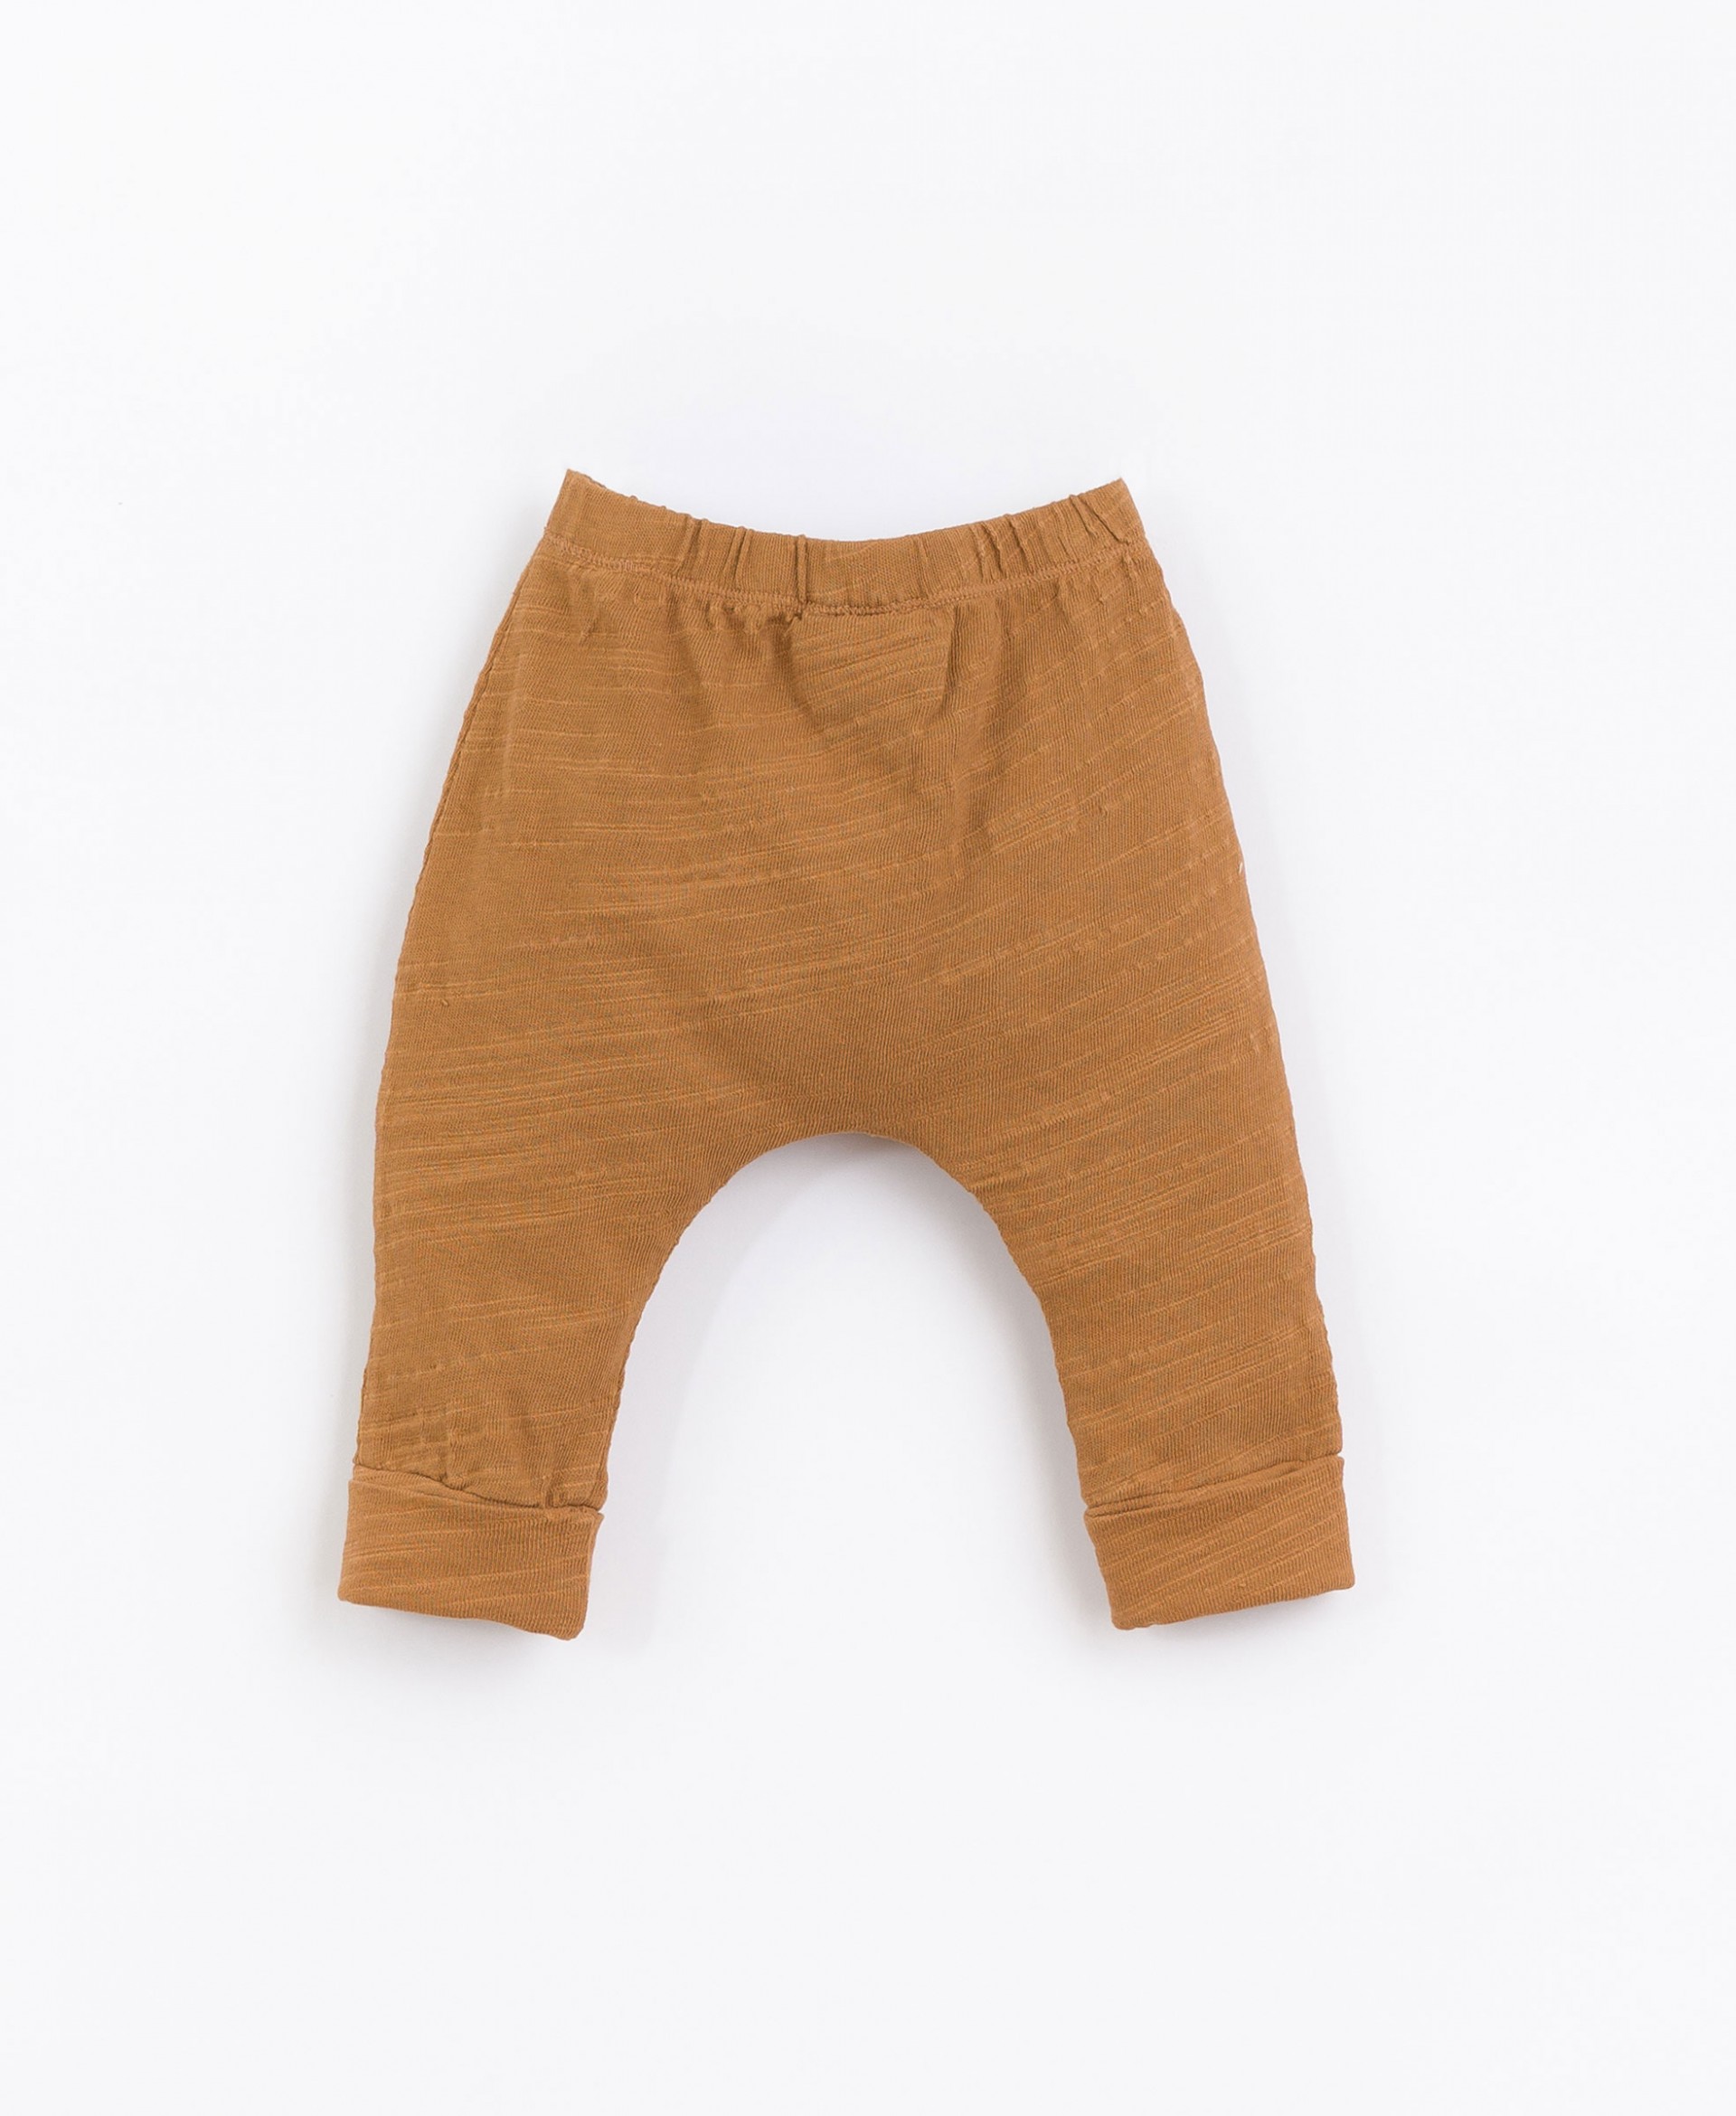 Pantalones fabricados con una mezcla de algodón orgánico y reciclado | Basketry 